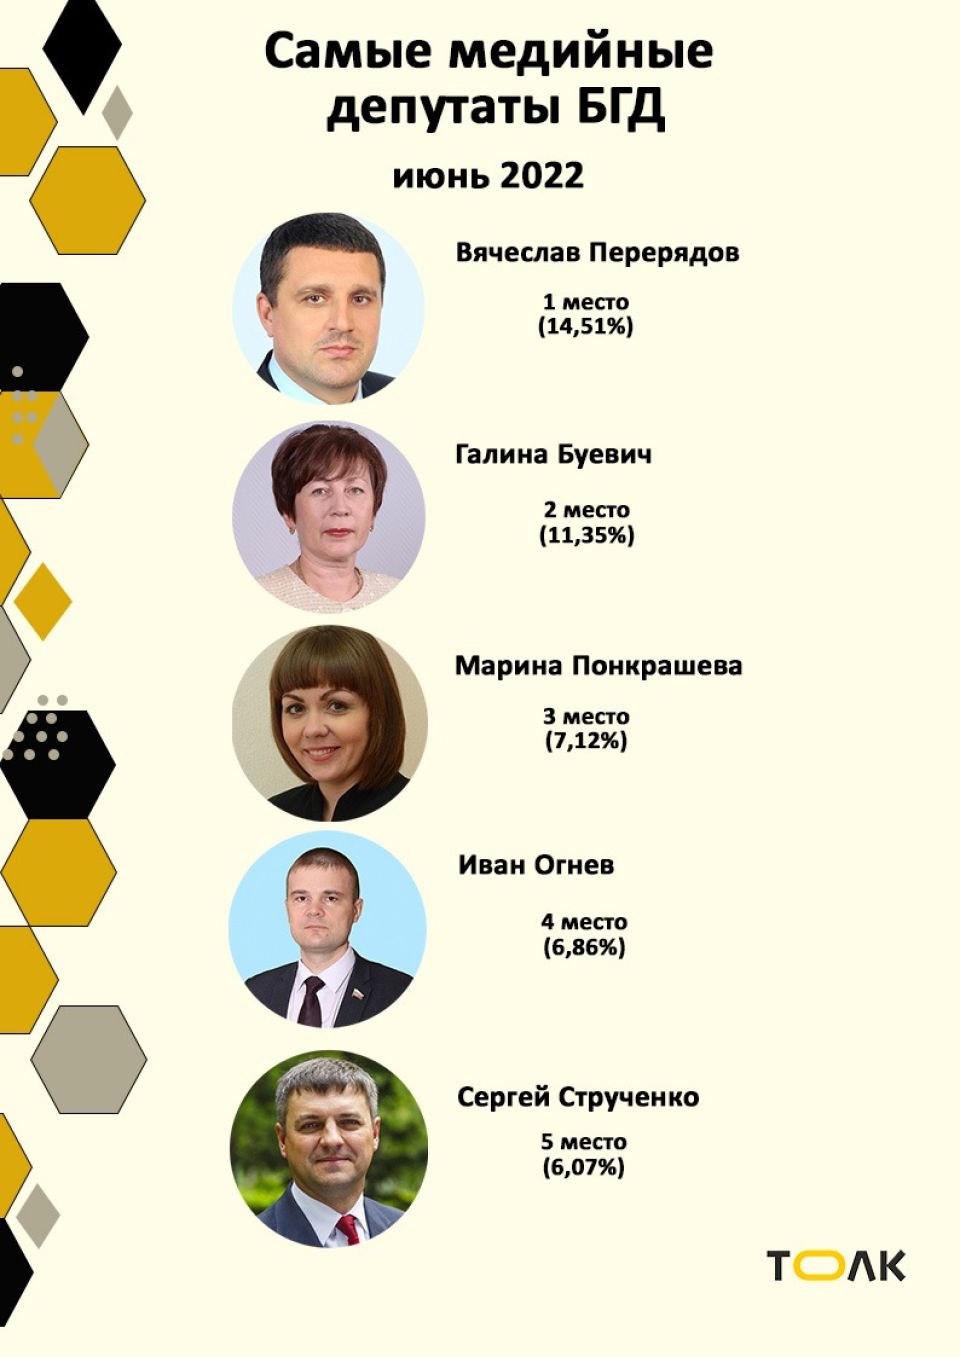 Рейтинг медийности депутатов БГД, июнь 2022 года